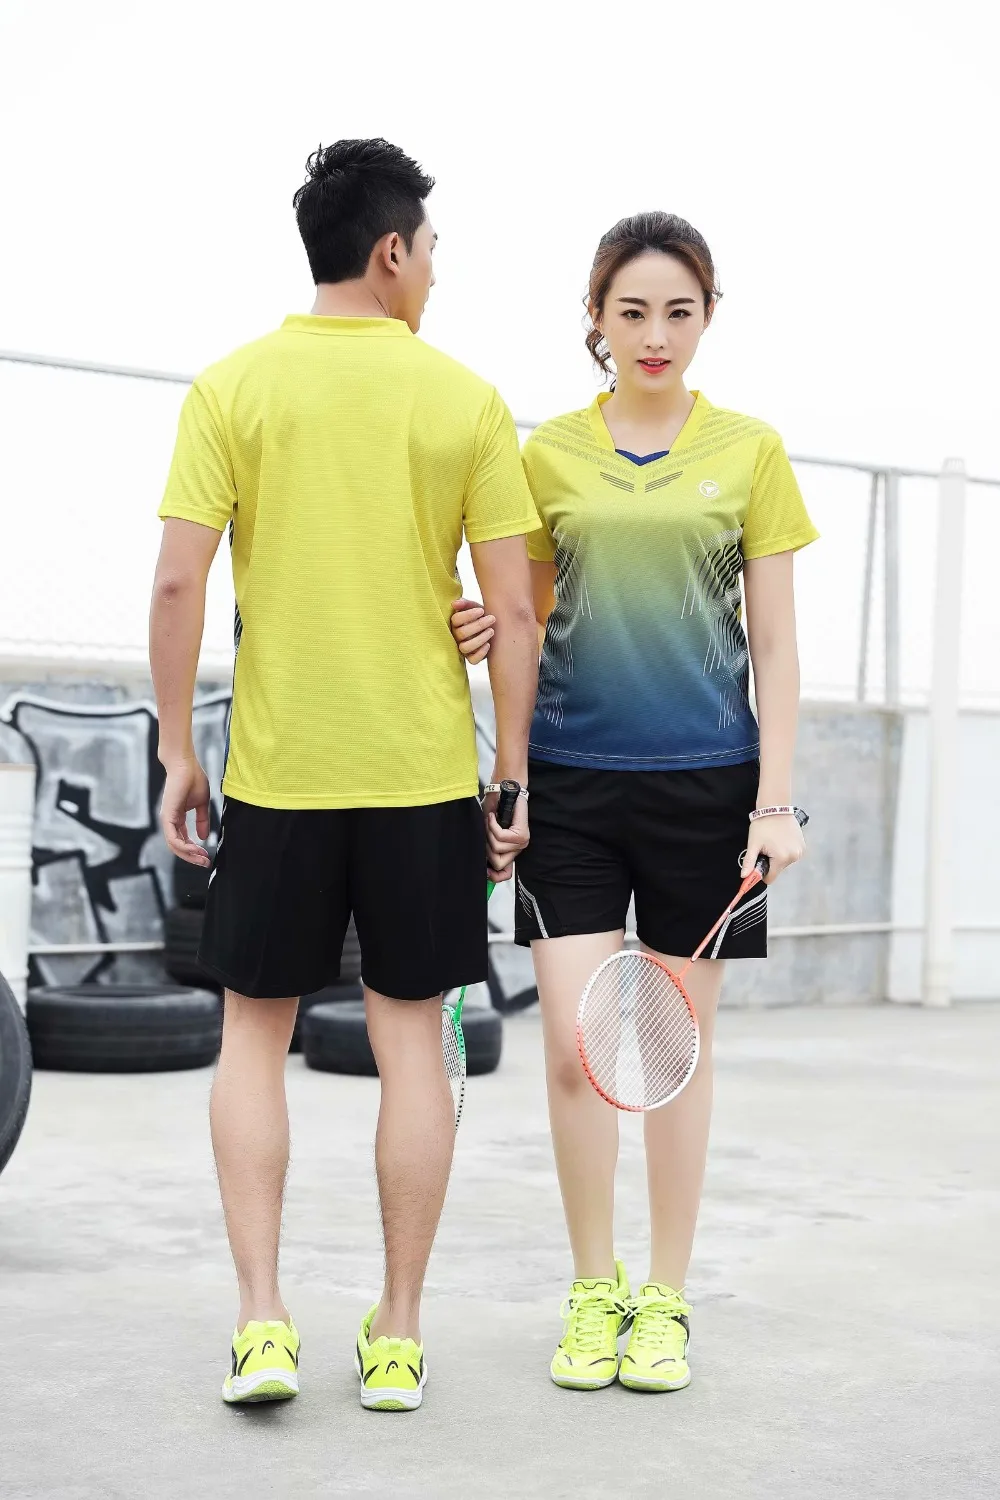 Мужская/женская рубашка для бадминтона, Майки для настольного тенниса, тренировочный костюм, спортивная футболка волан, футболки для бега, фитнеса